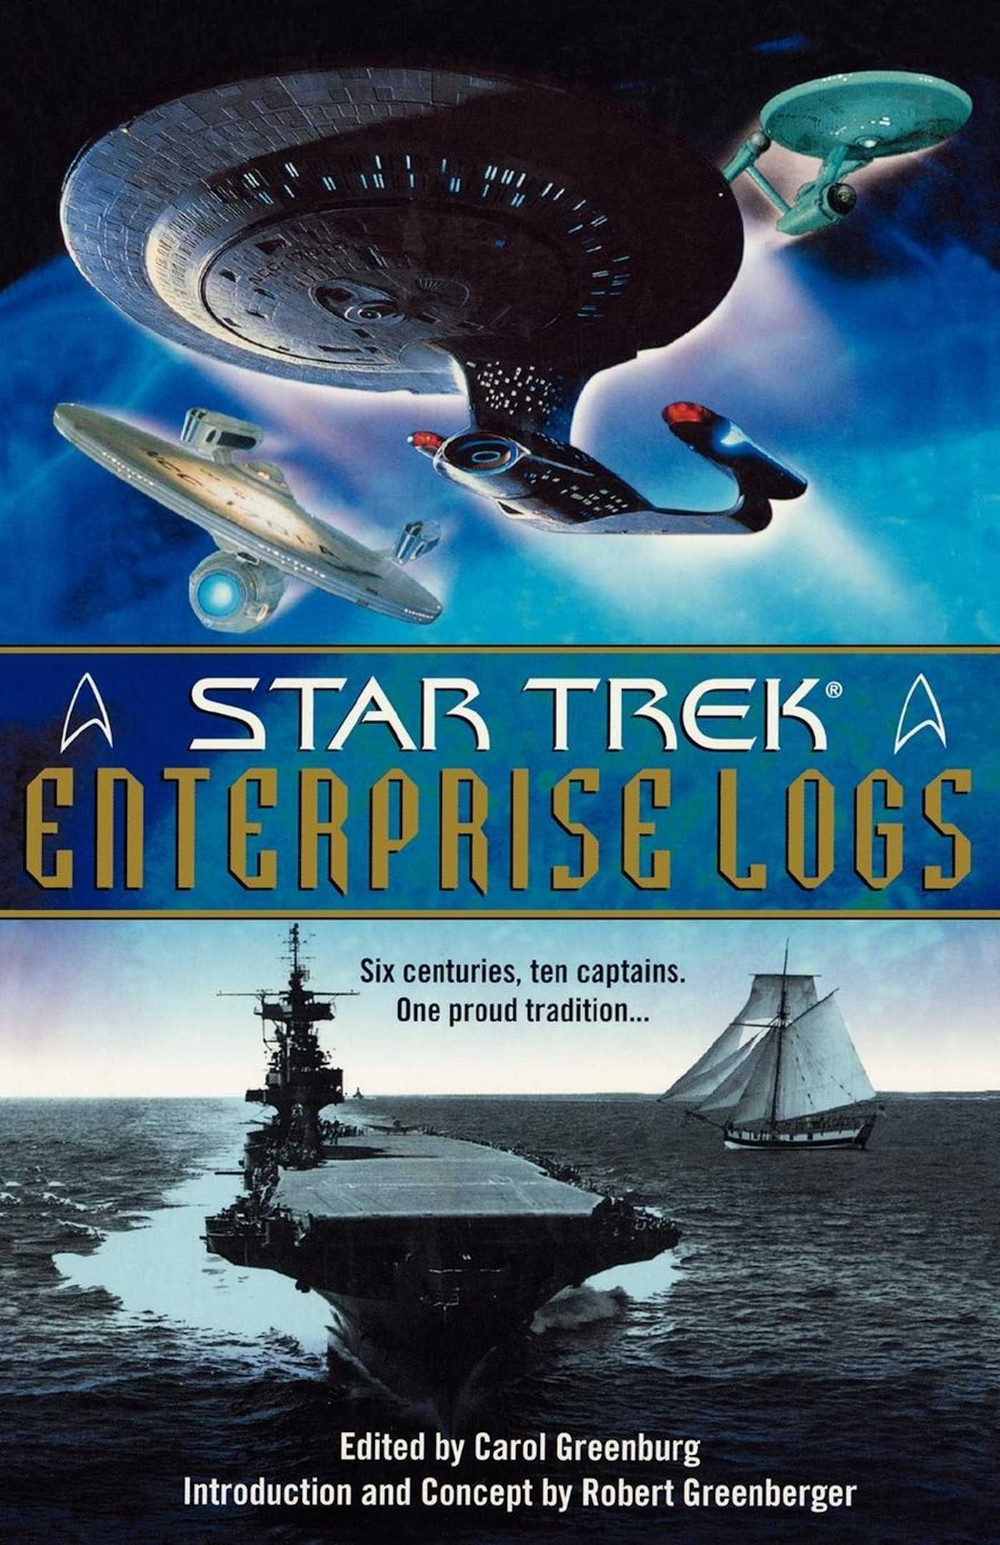 "Enterprise Logs"